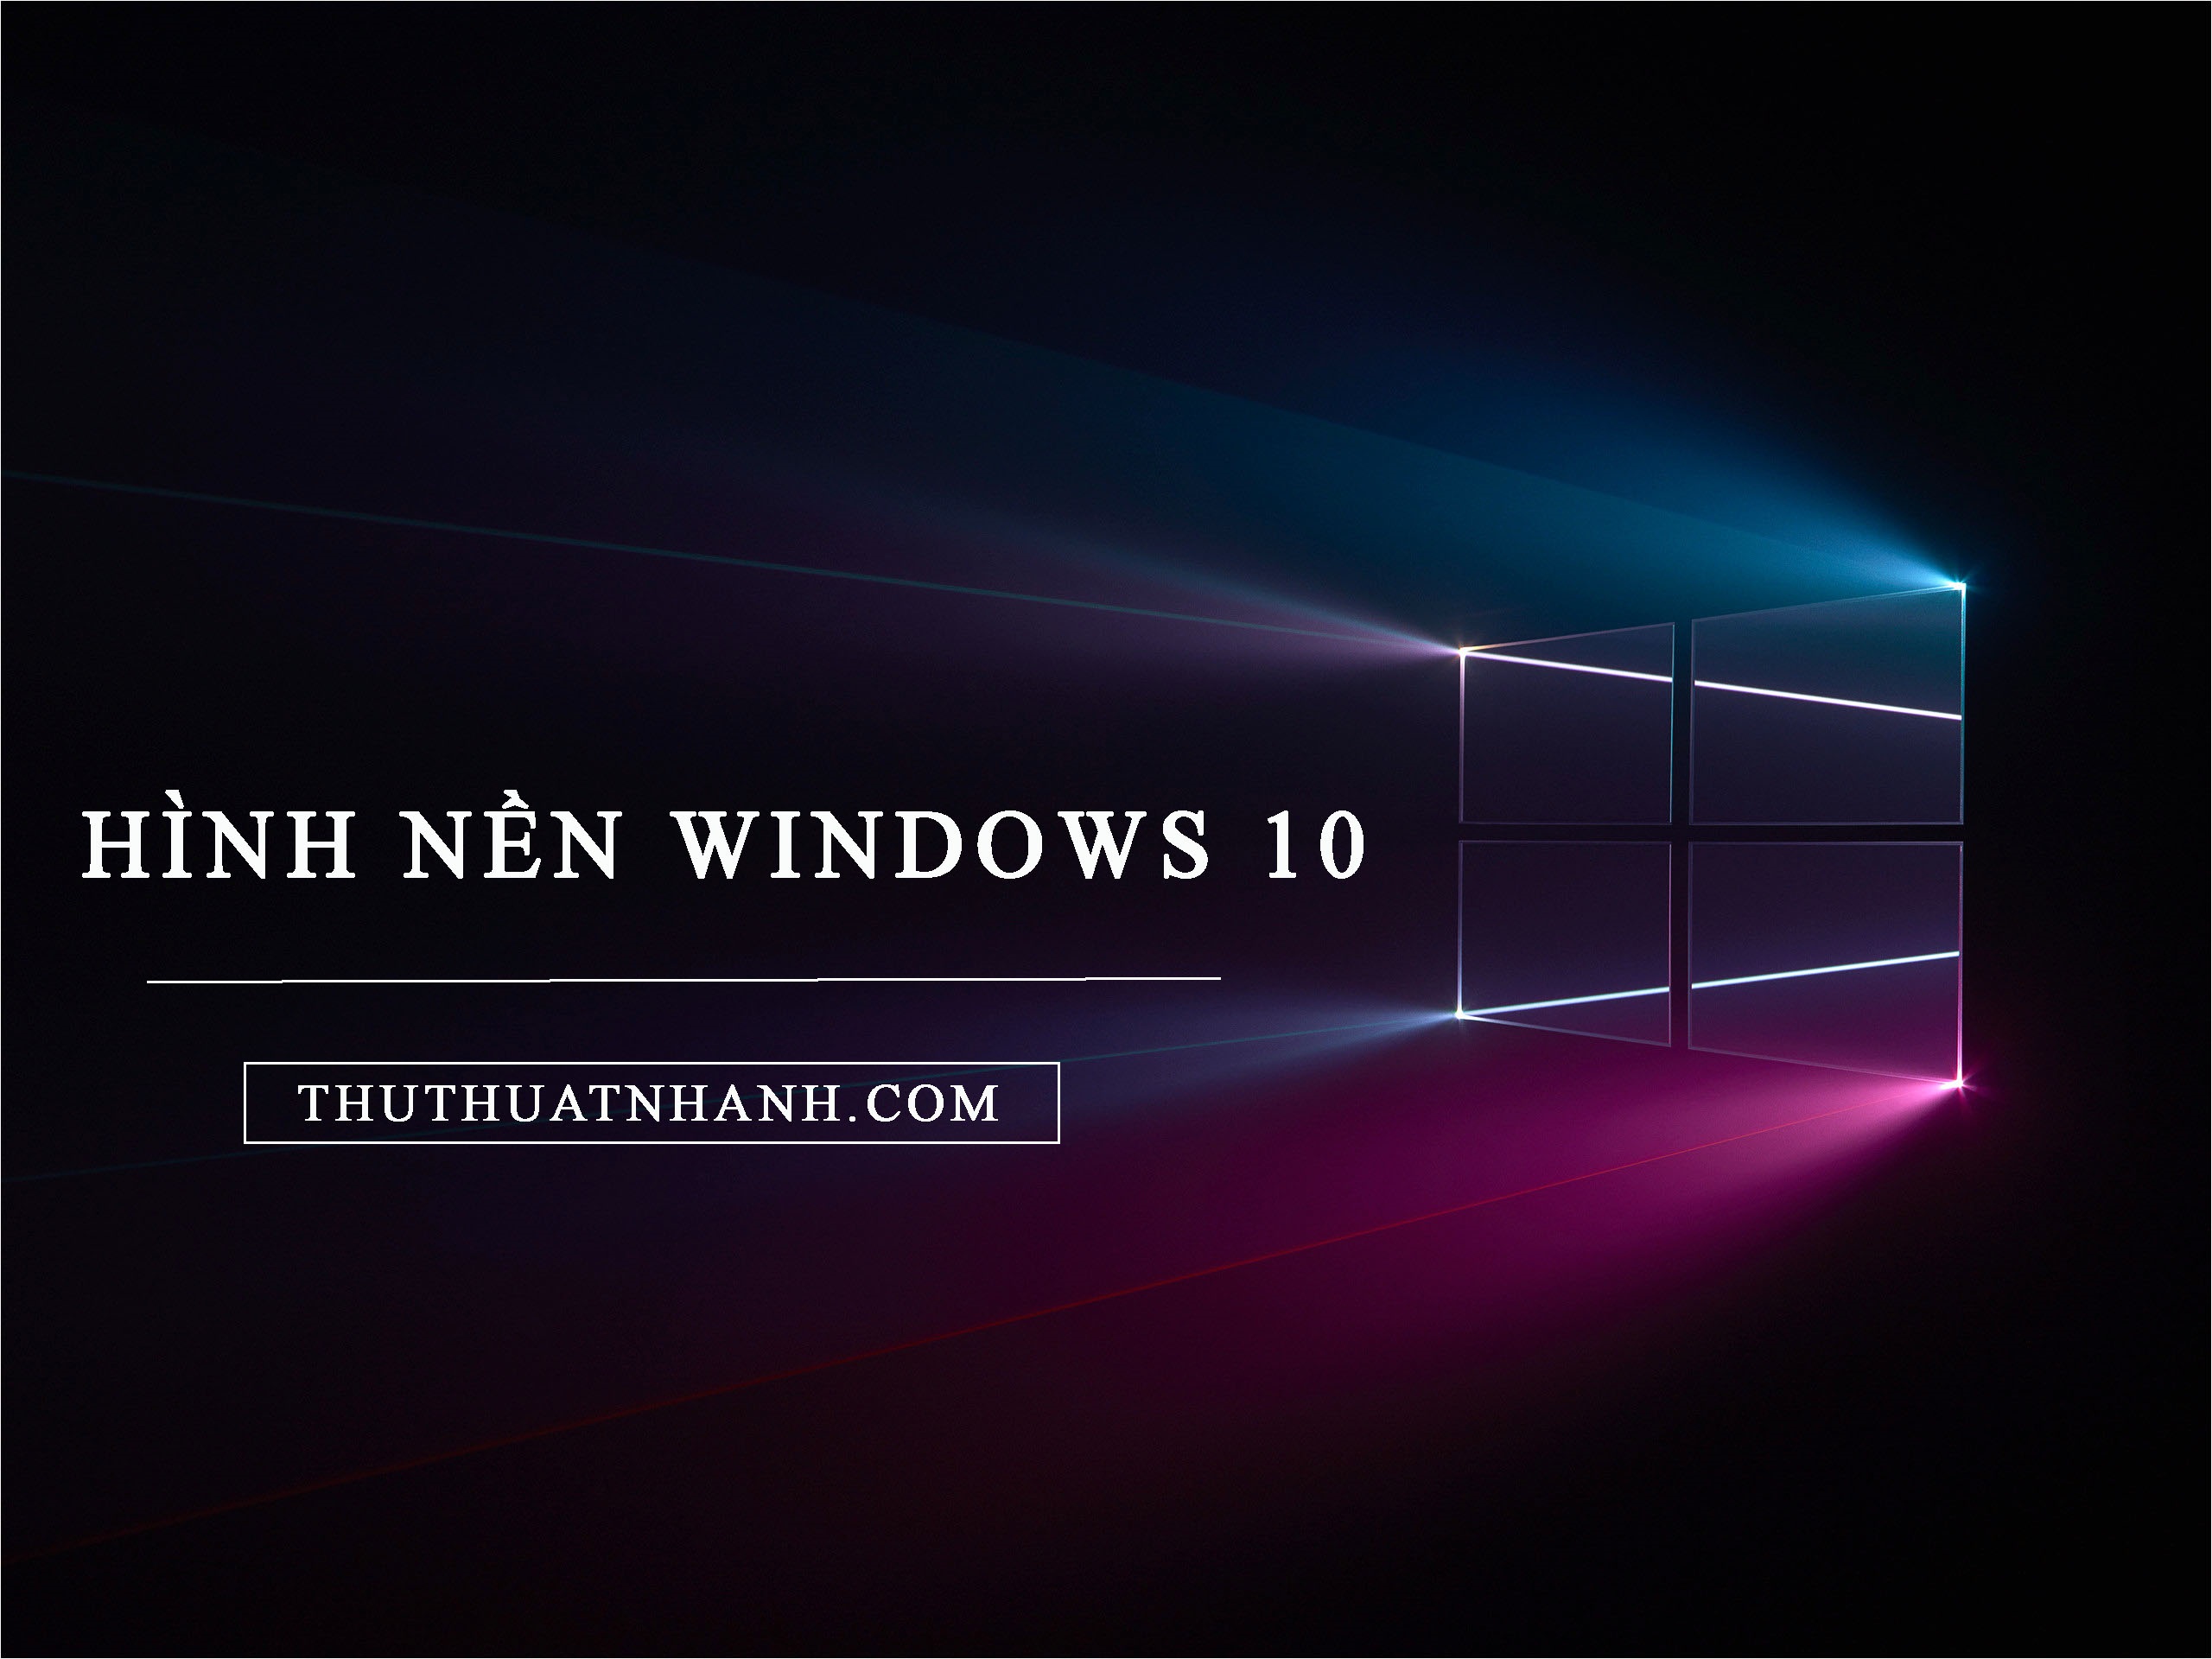 Tổng hợp 50 hình nền win 10 đẹp nhất  Hình nền máy tính  Wallpaper windows  10 Windows 10 logo Windows wallpaper